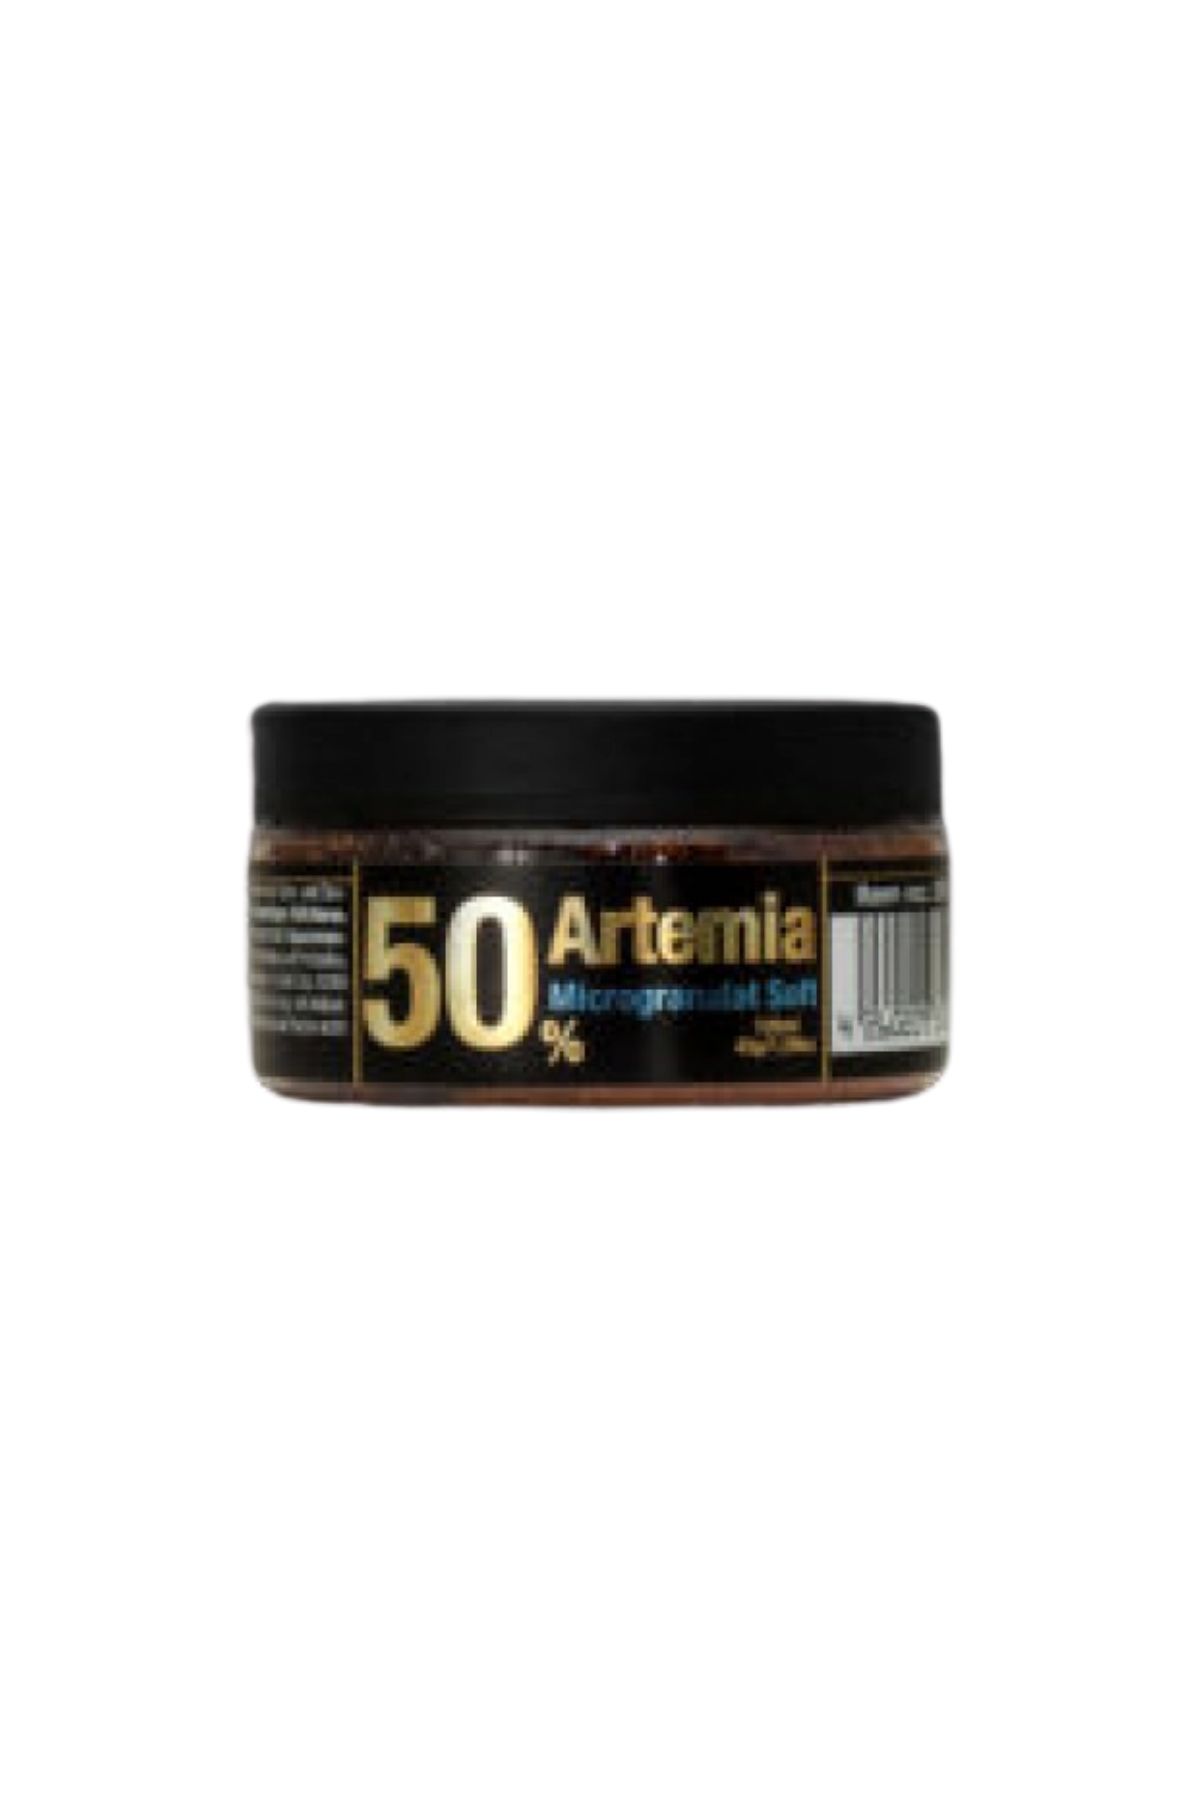 <em>Discus</em>food Artemia 50% Micro Granulate Soft